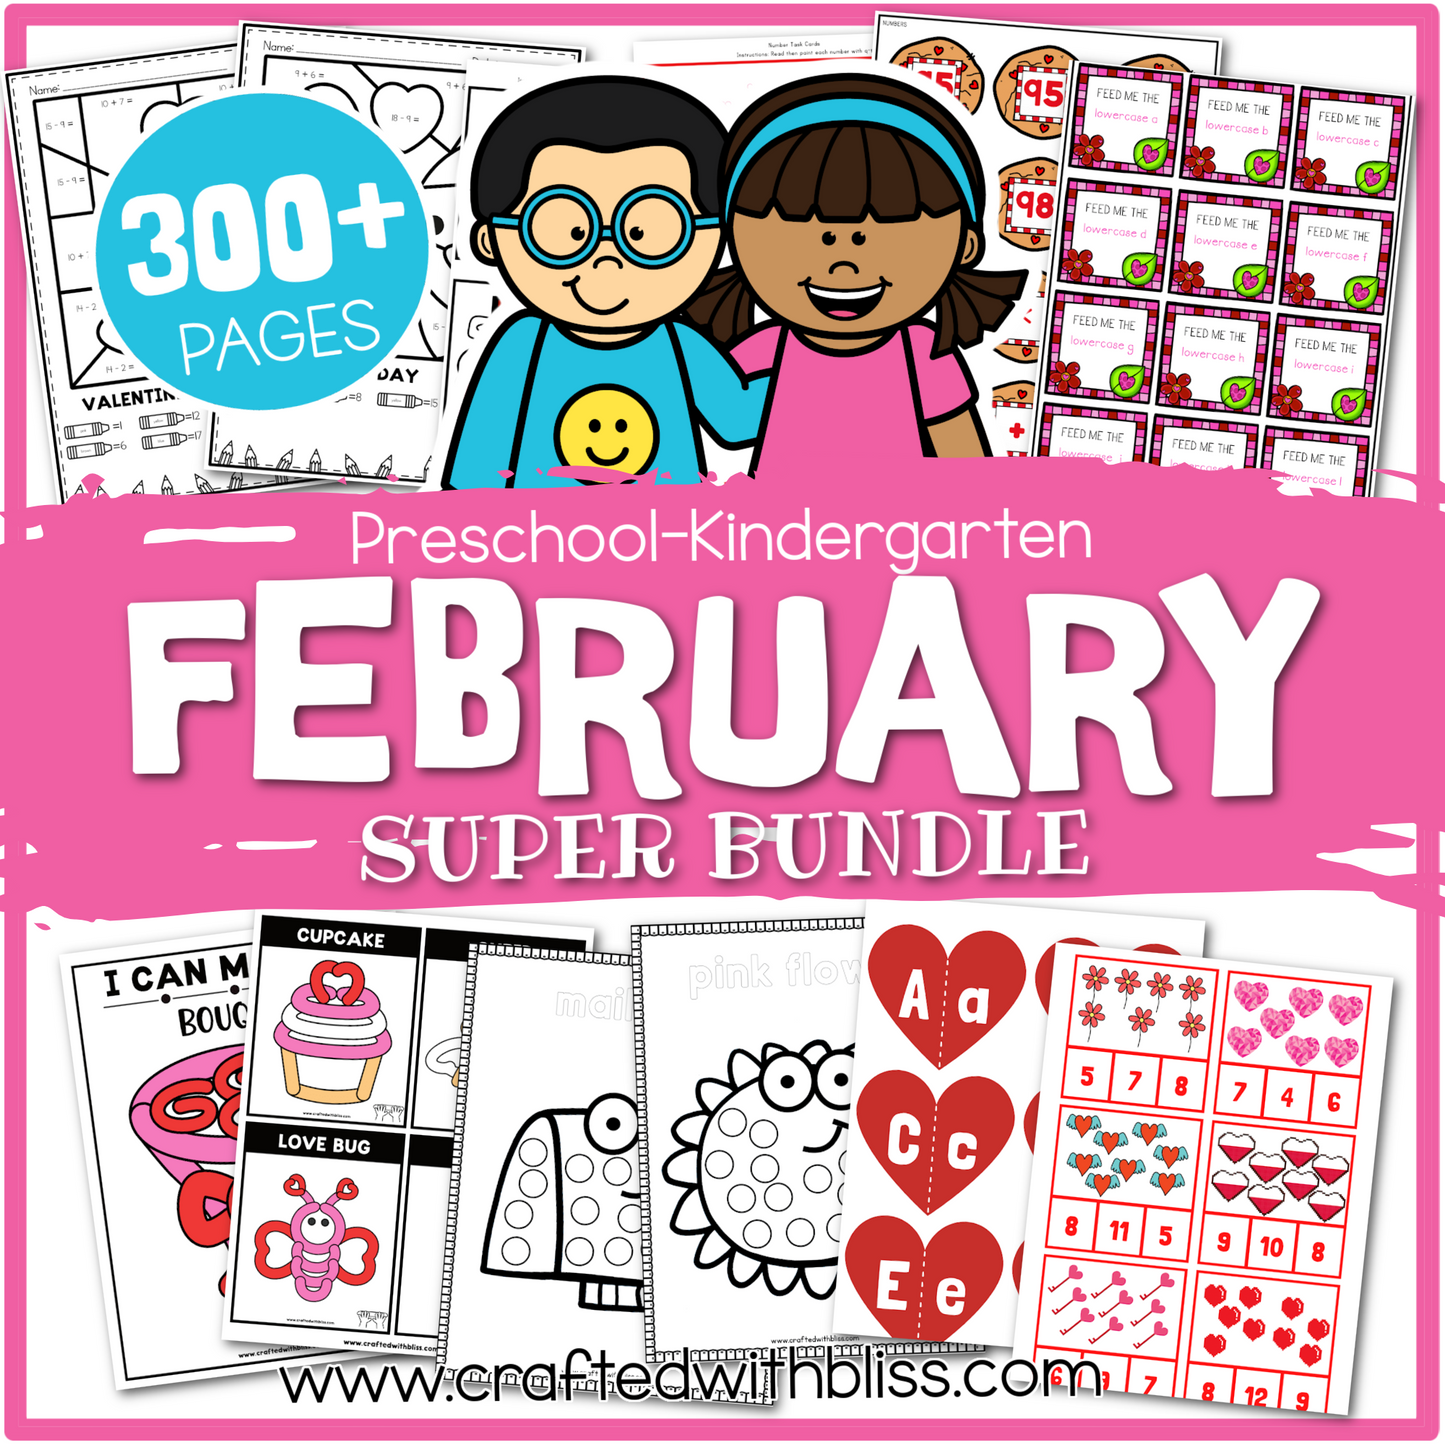 February Preschool-Kindergarten Bundle, February Kindergarten Activities, Daycare Craft Worksheet, Printable Feb Activities Kids Homeschool